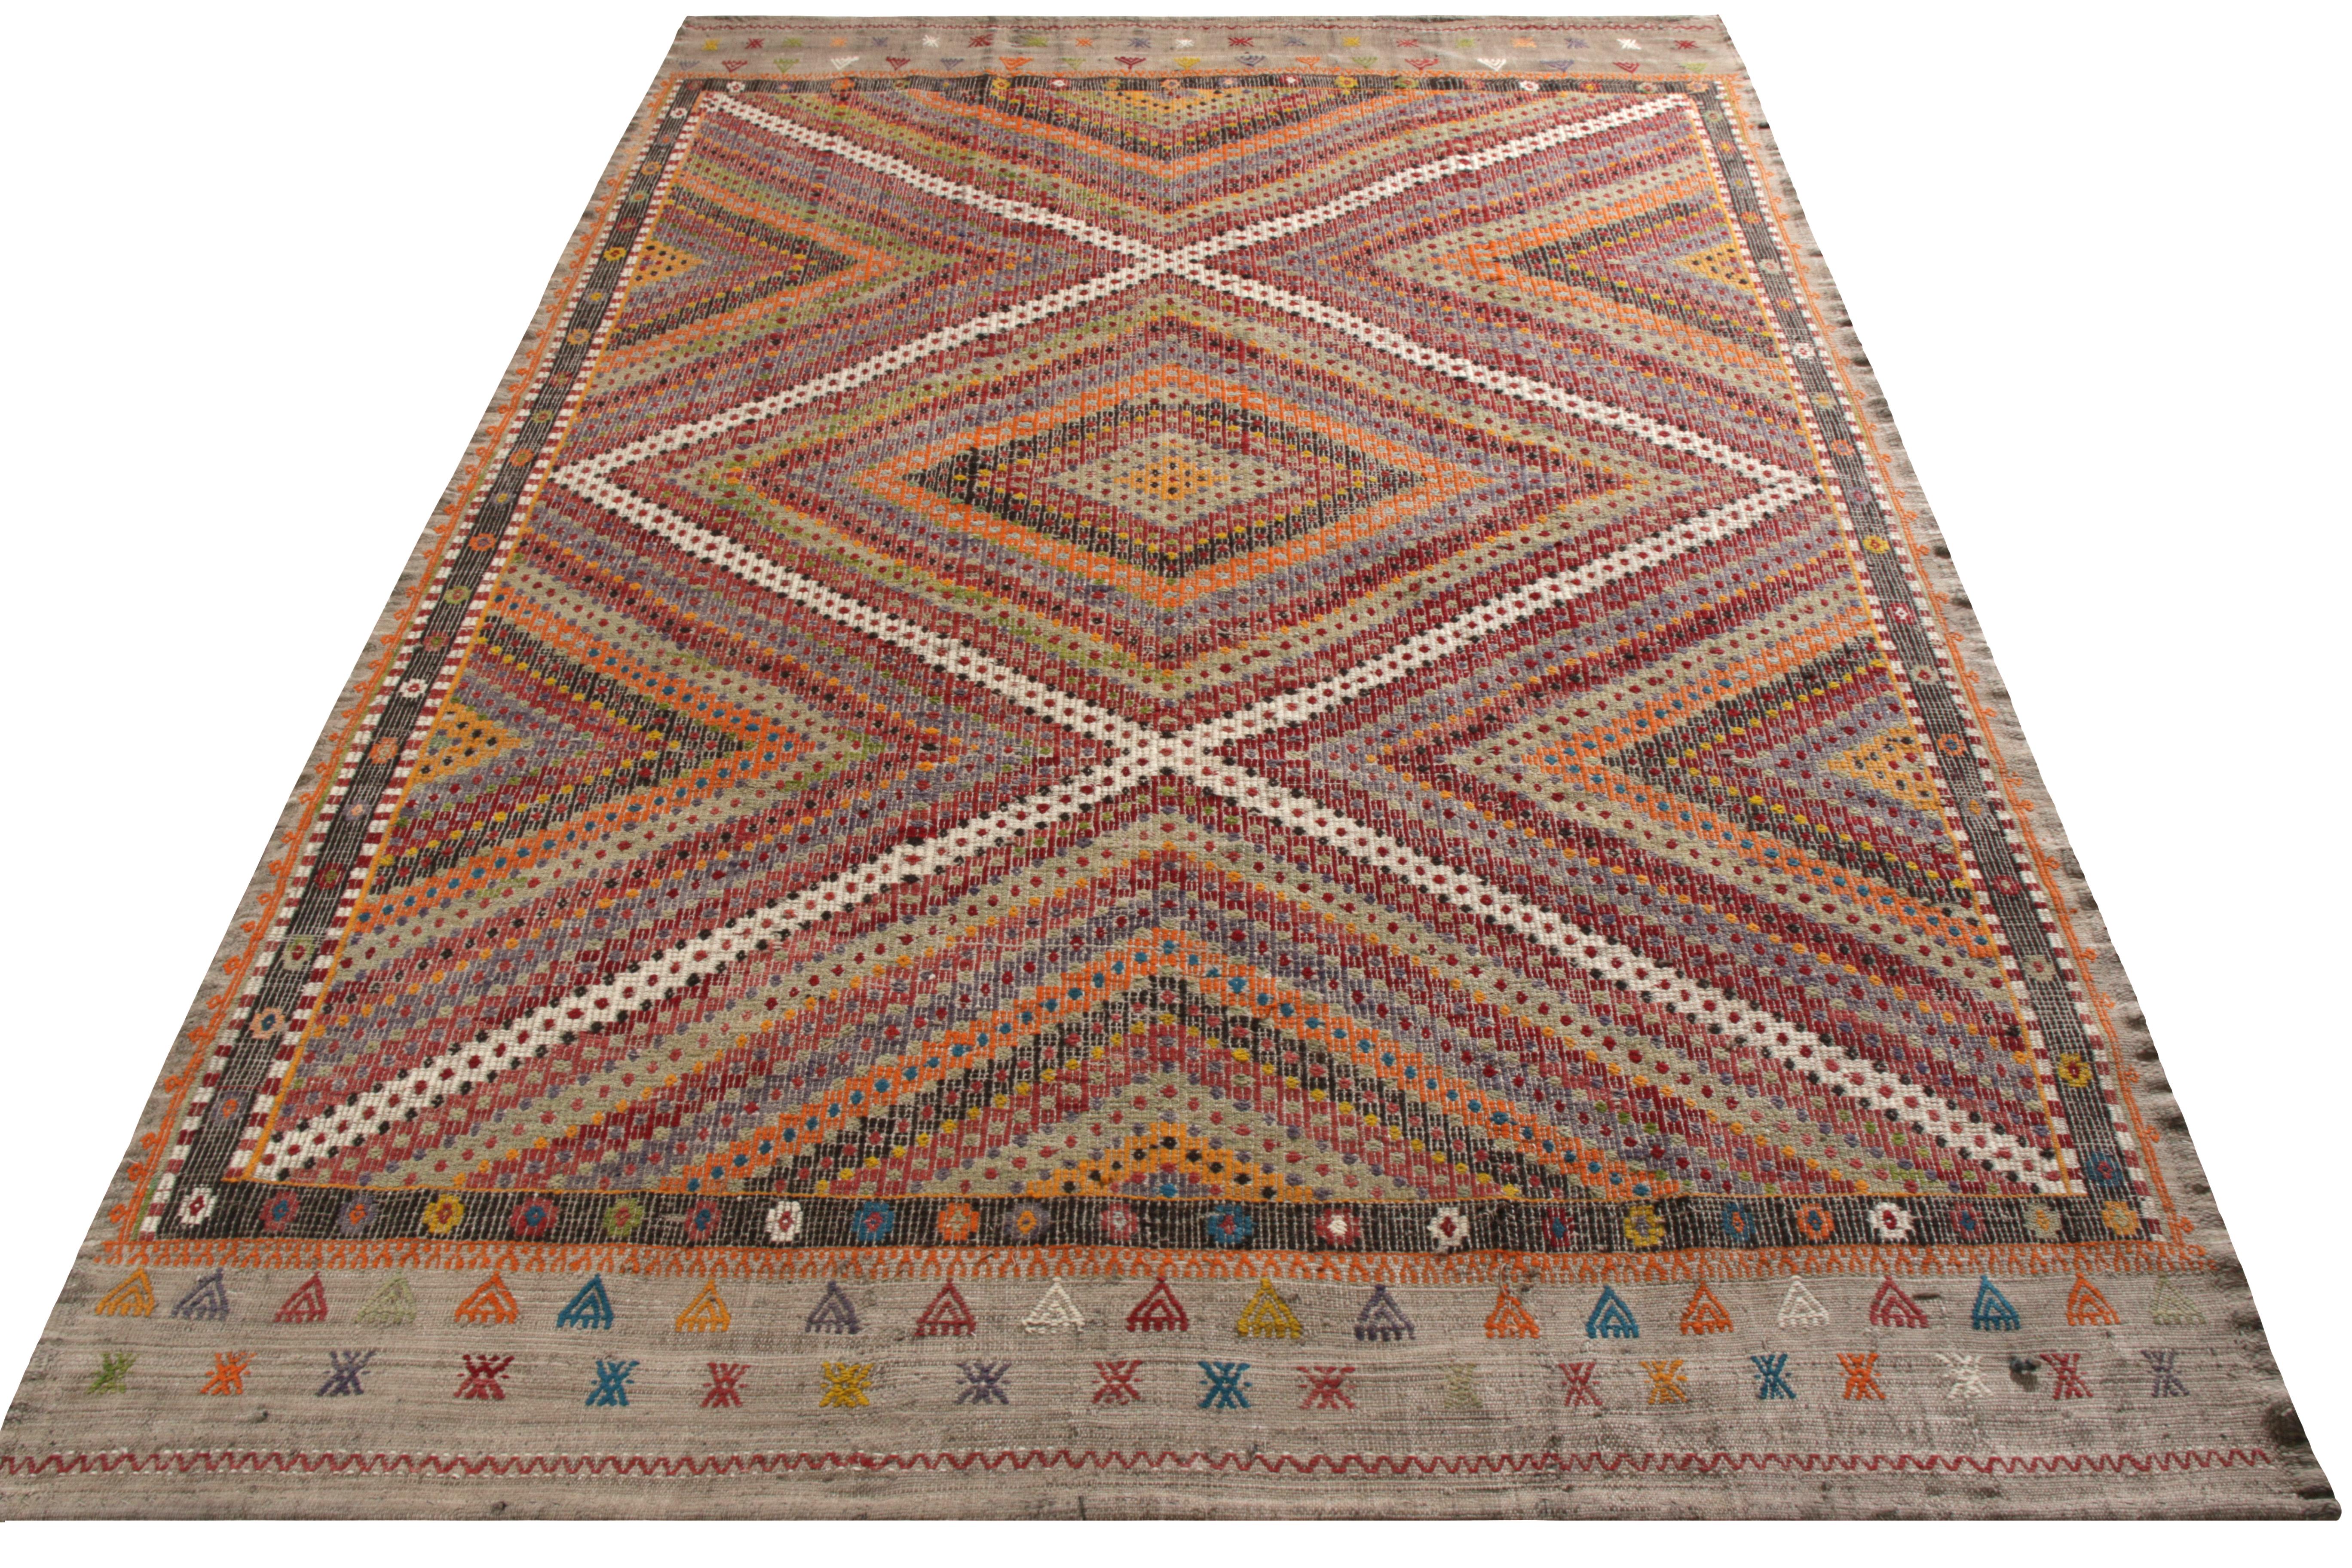 Un tapis Kilim vintage 6 x 9 d'un tissage de broderie haut-bas rarement vu, tissé à la main en laine originaire de Turquie, vers 1950-1960. Un fabuleux mariage de la couleur et de la géométrie tribales avec l'élément textural pour un choix